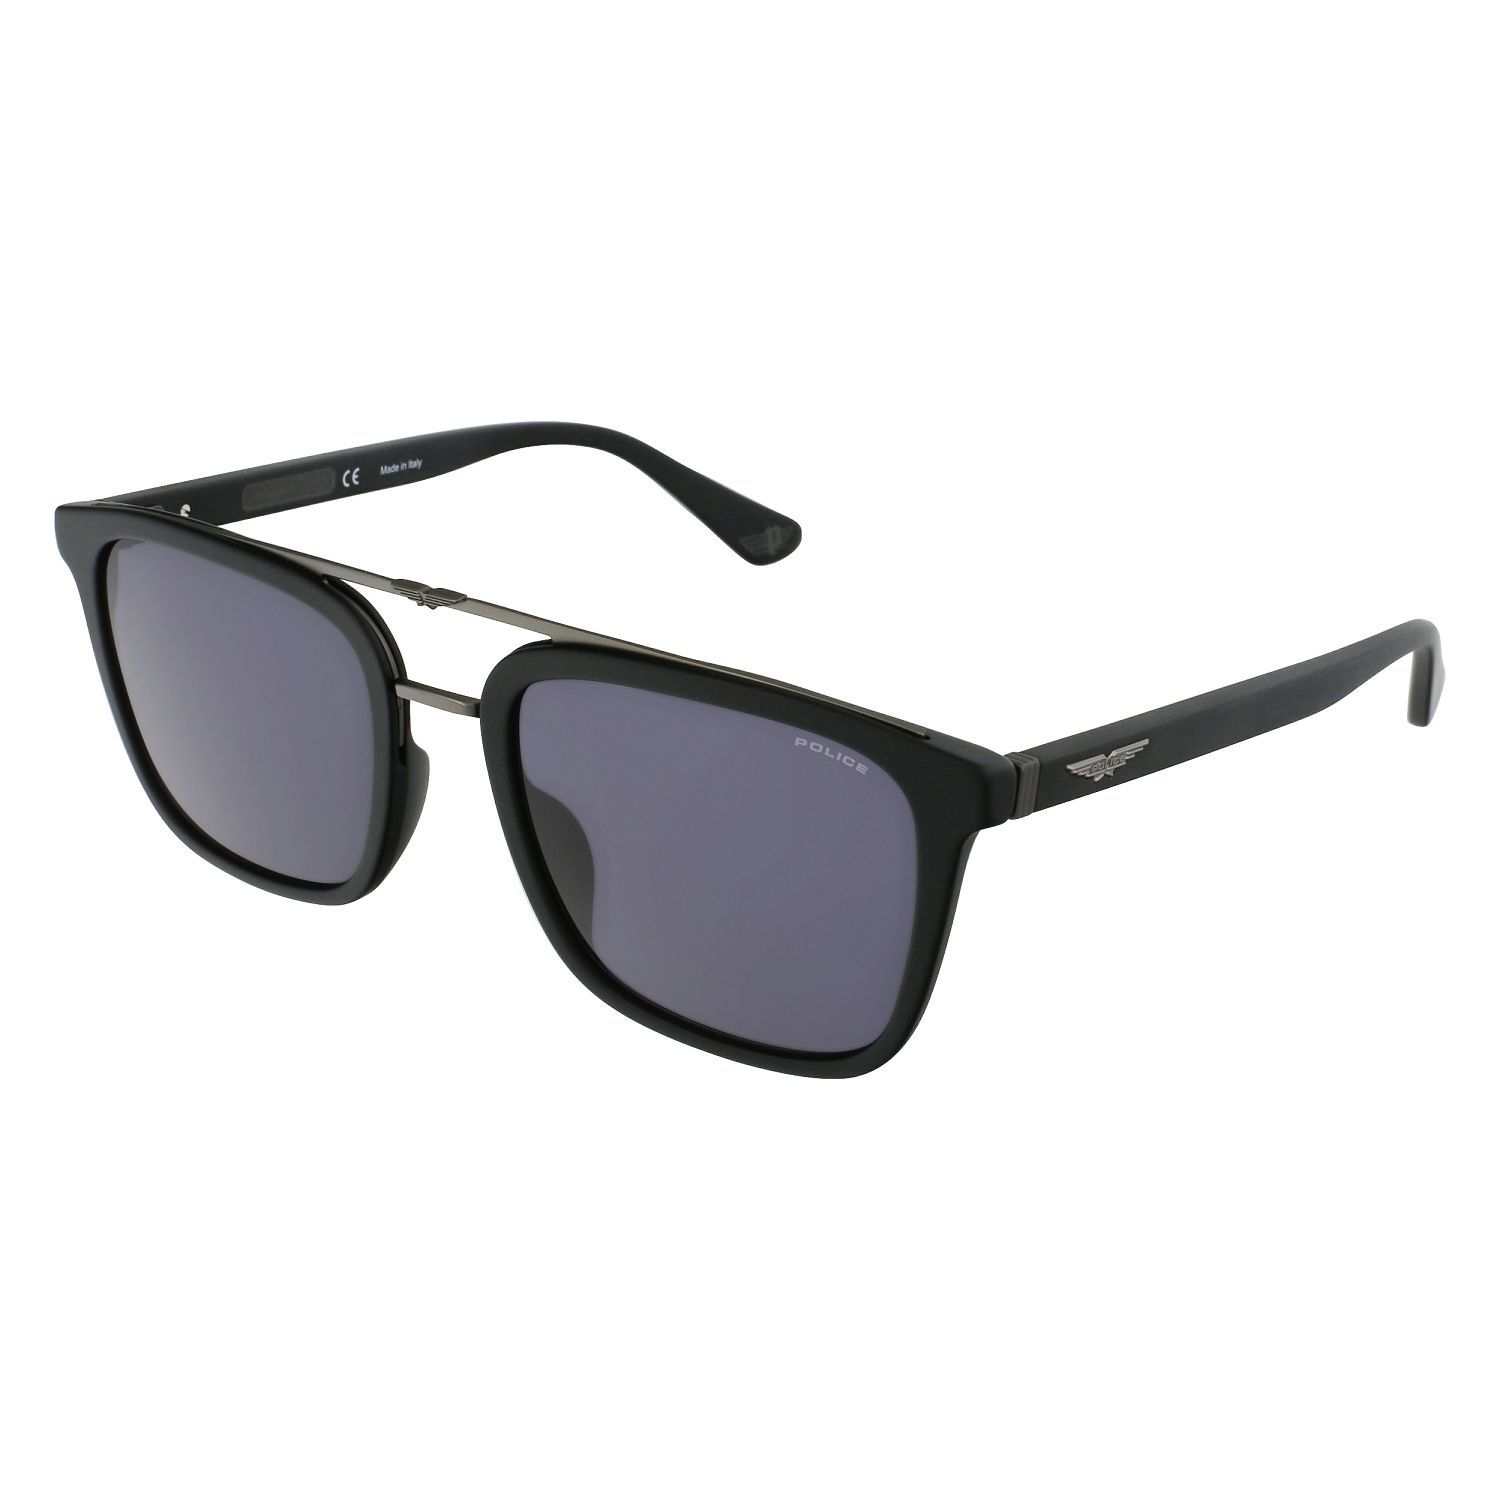 SPLB41 Square Sunglasses 703 - size 55